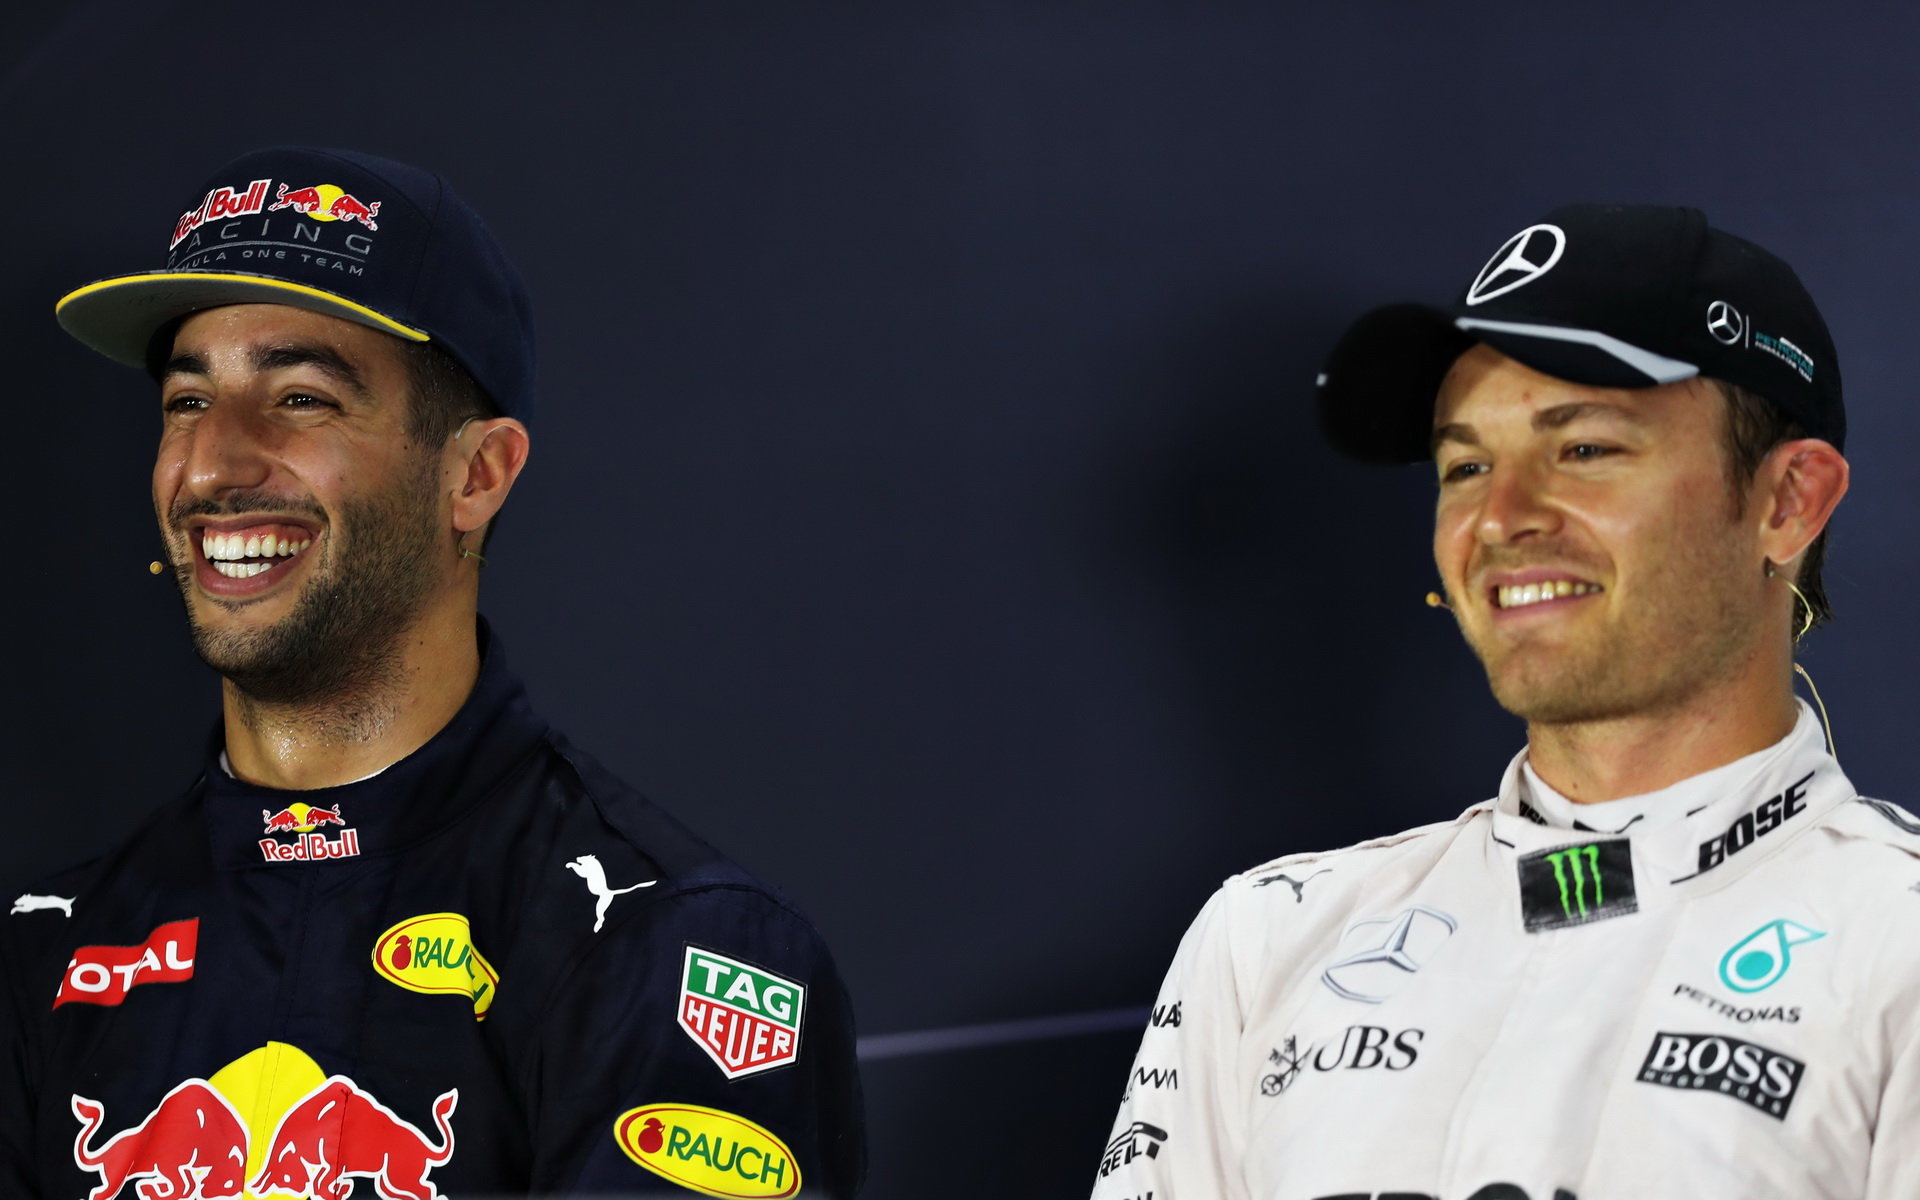 Závěrečný boj mezi Ricciardem a Rosbergem skončil lépe pro německého pilota